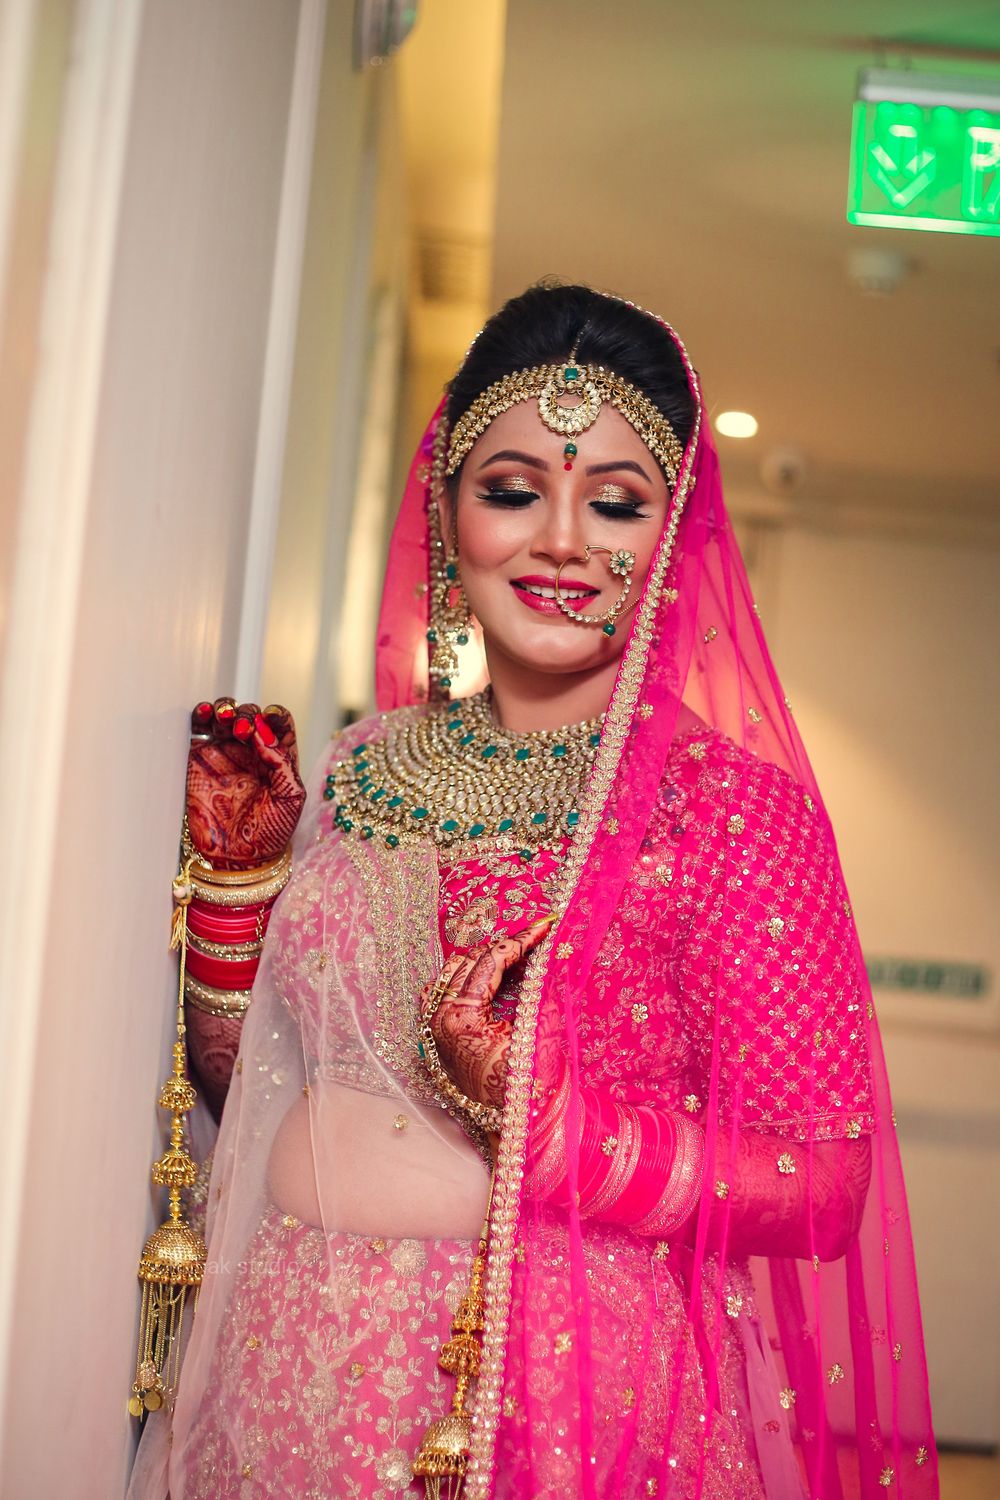 Photo From Bridal photoshoot (Shreya) - By Kanak Studio